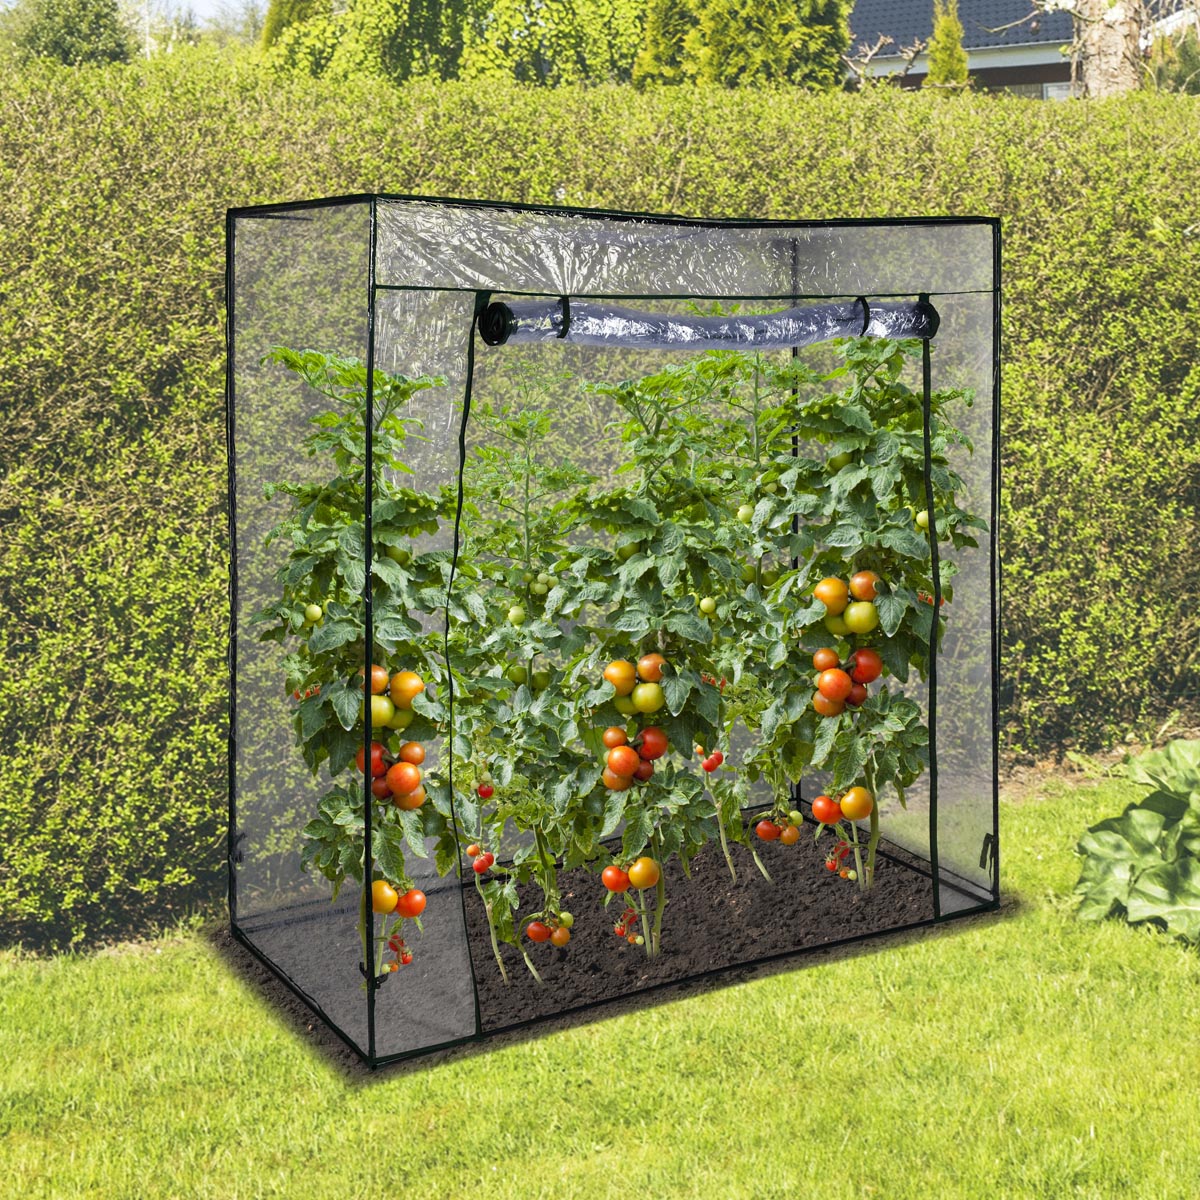 E-shop Haushalt international Zahradní fóliovník, 170 x 80 x 170 cm